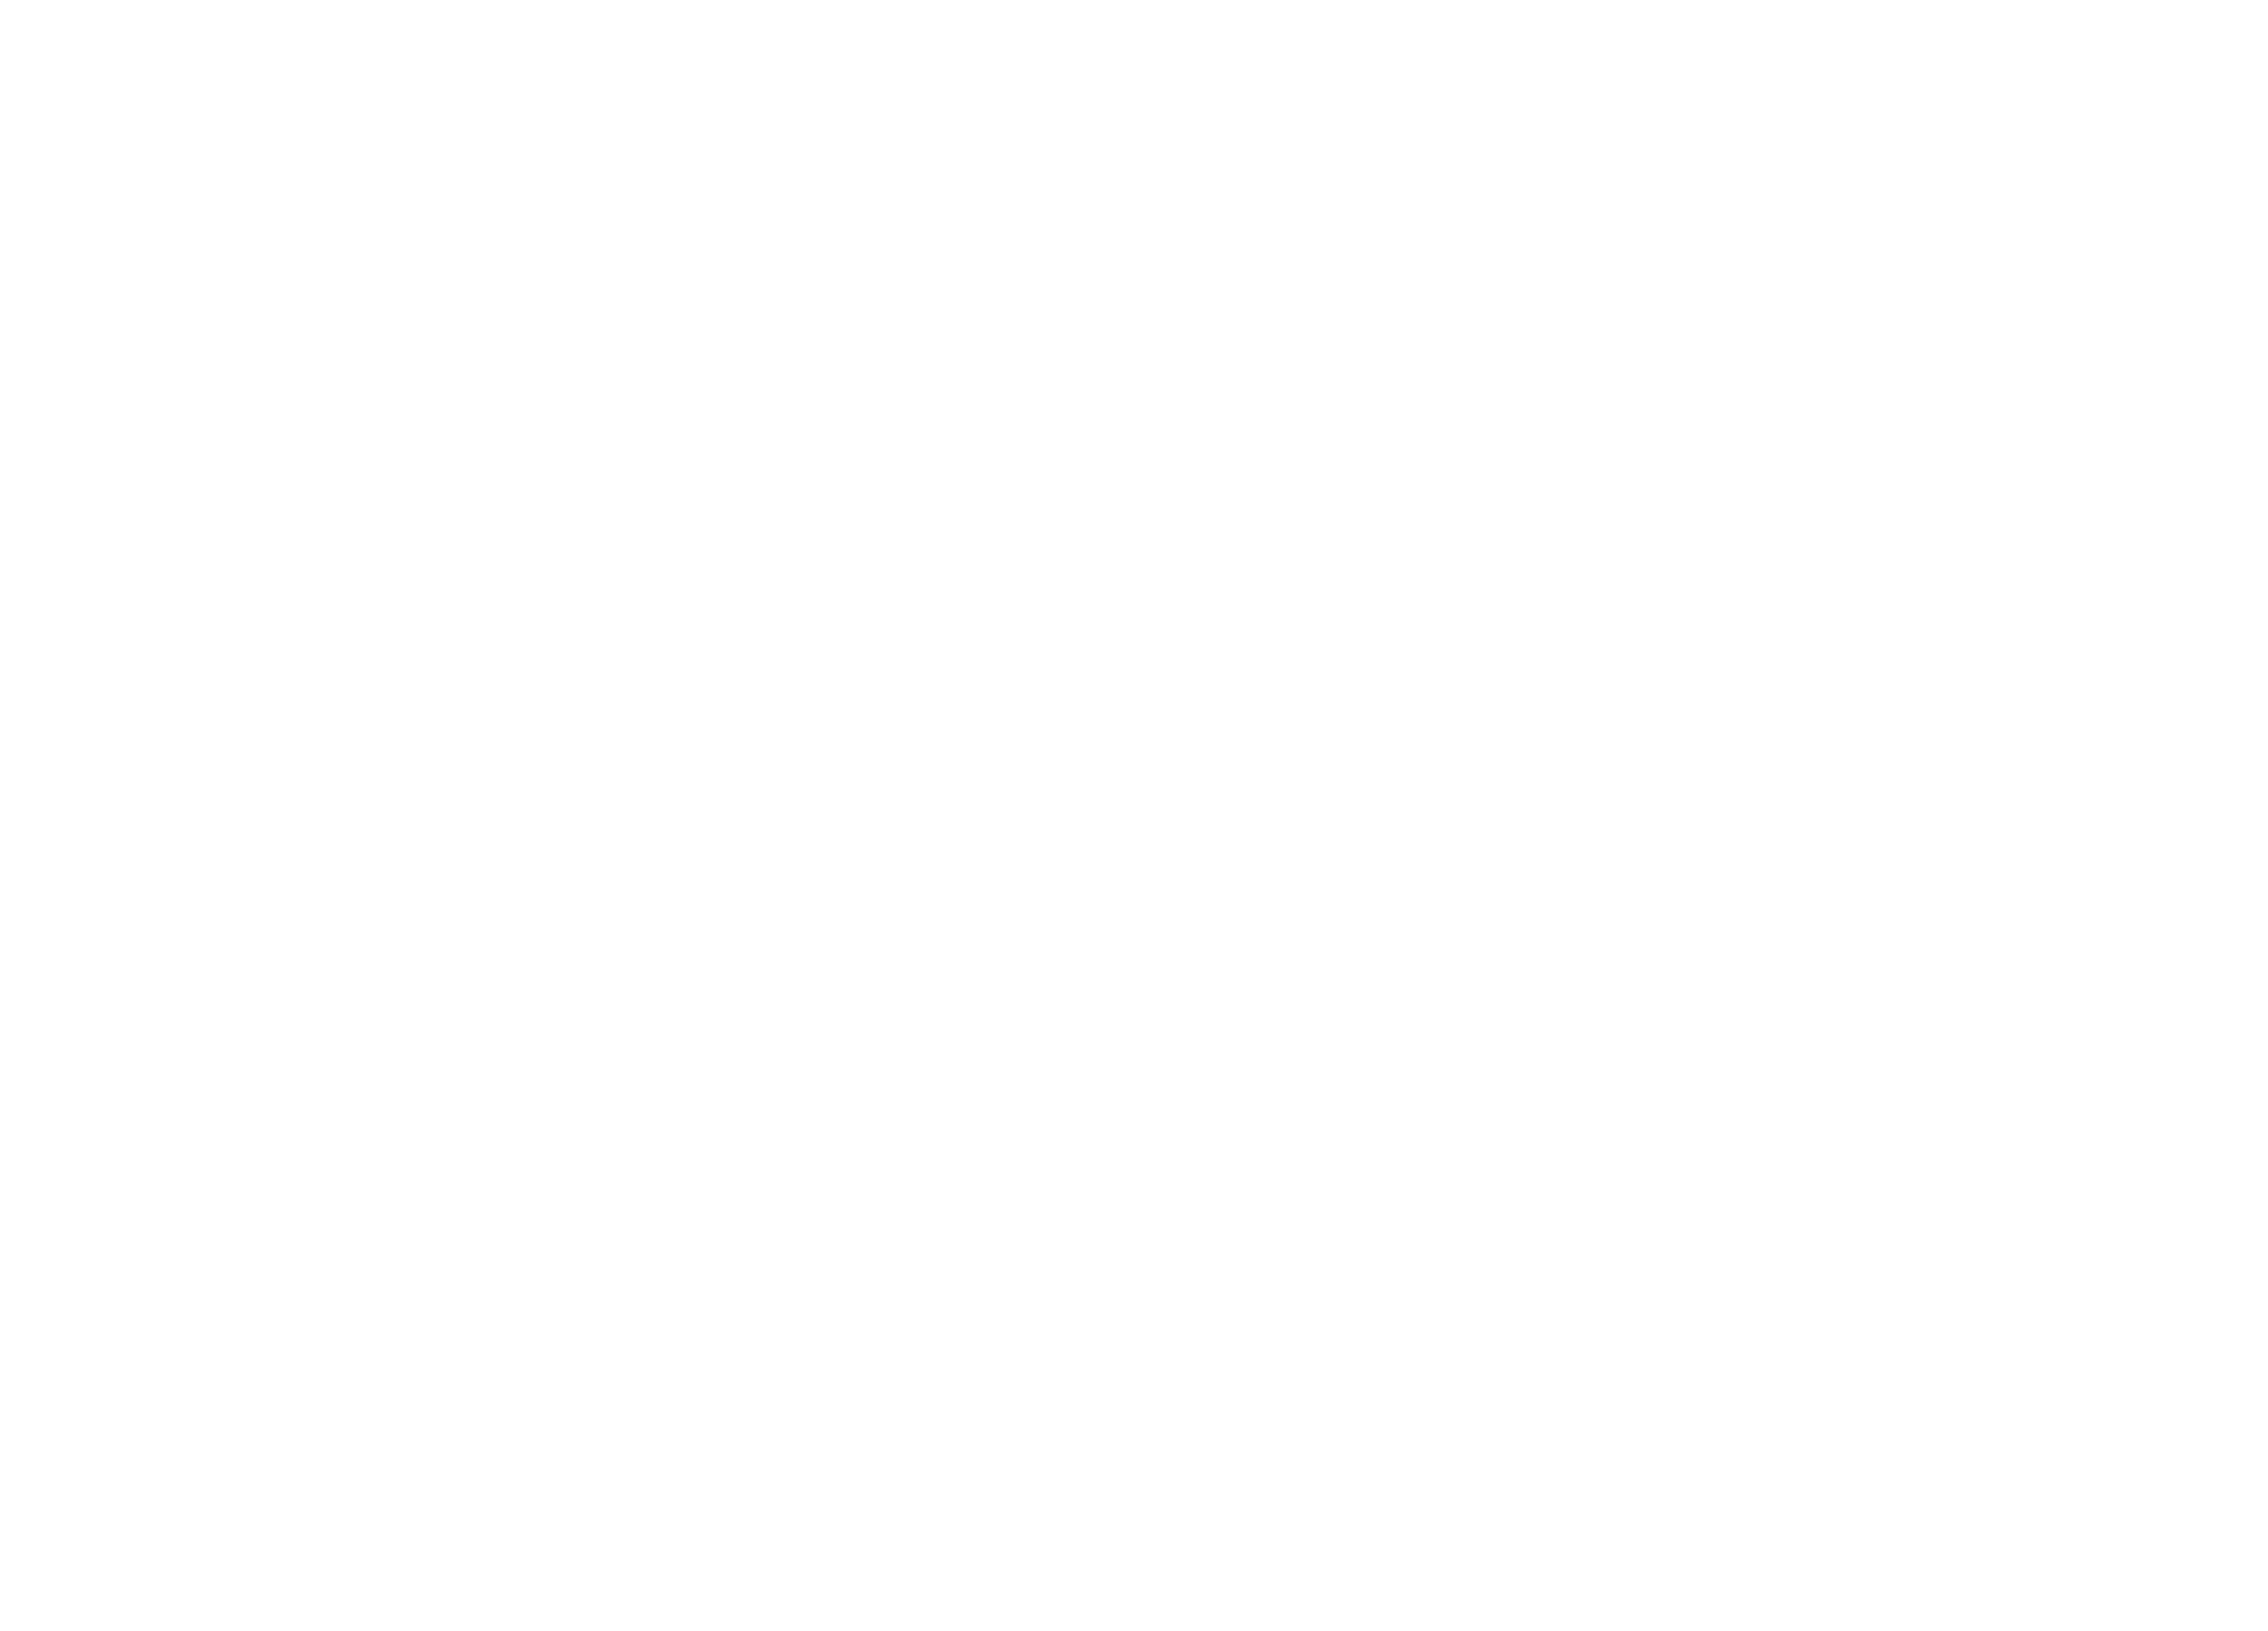 buckelew_farm_fireworks